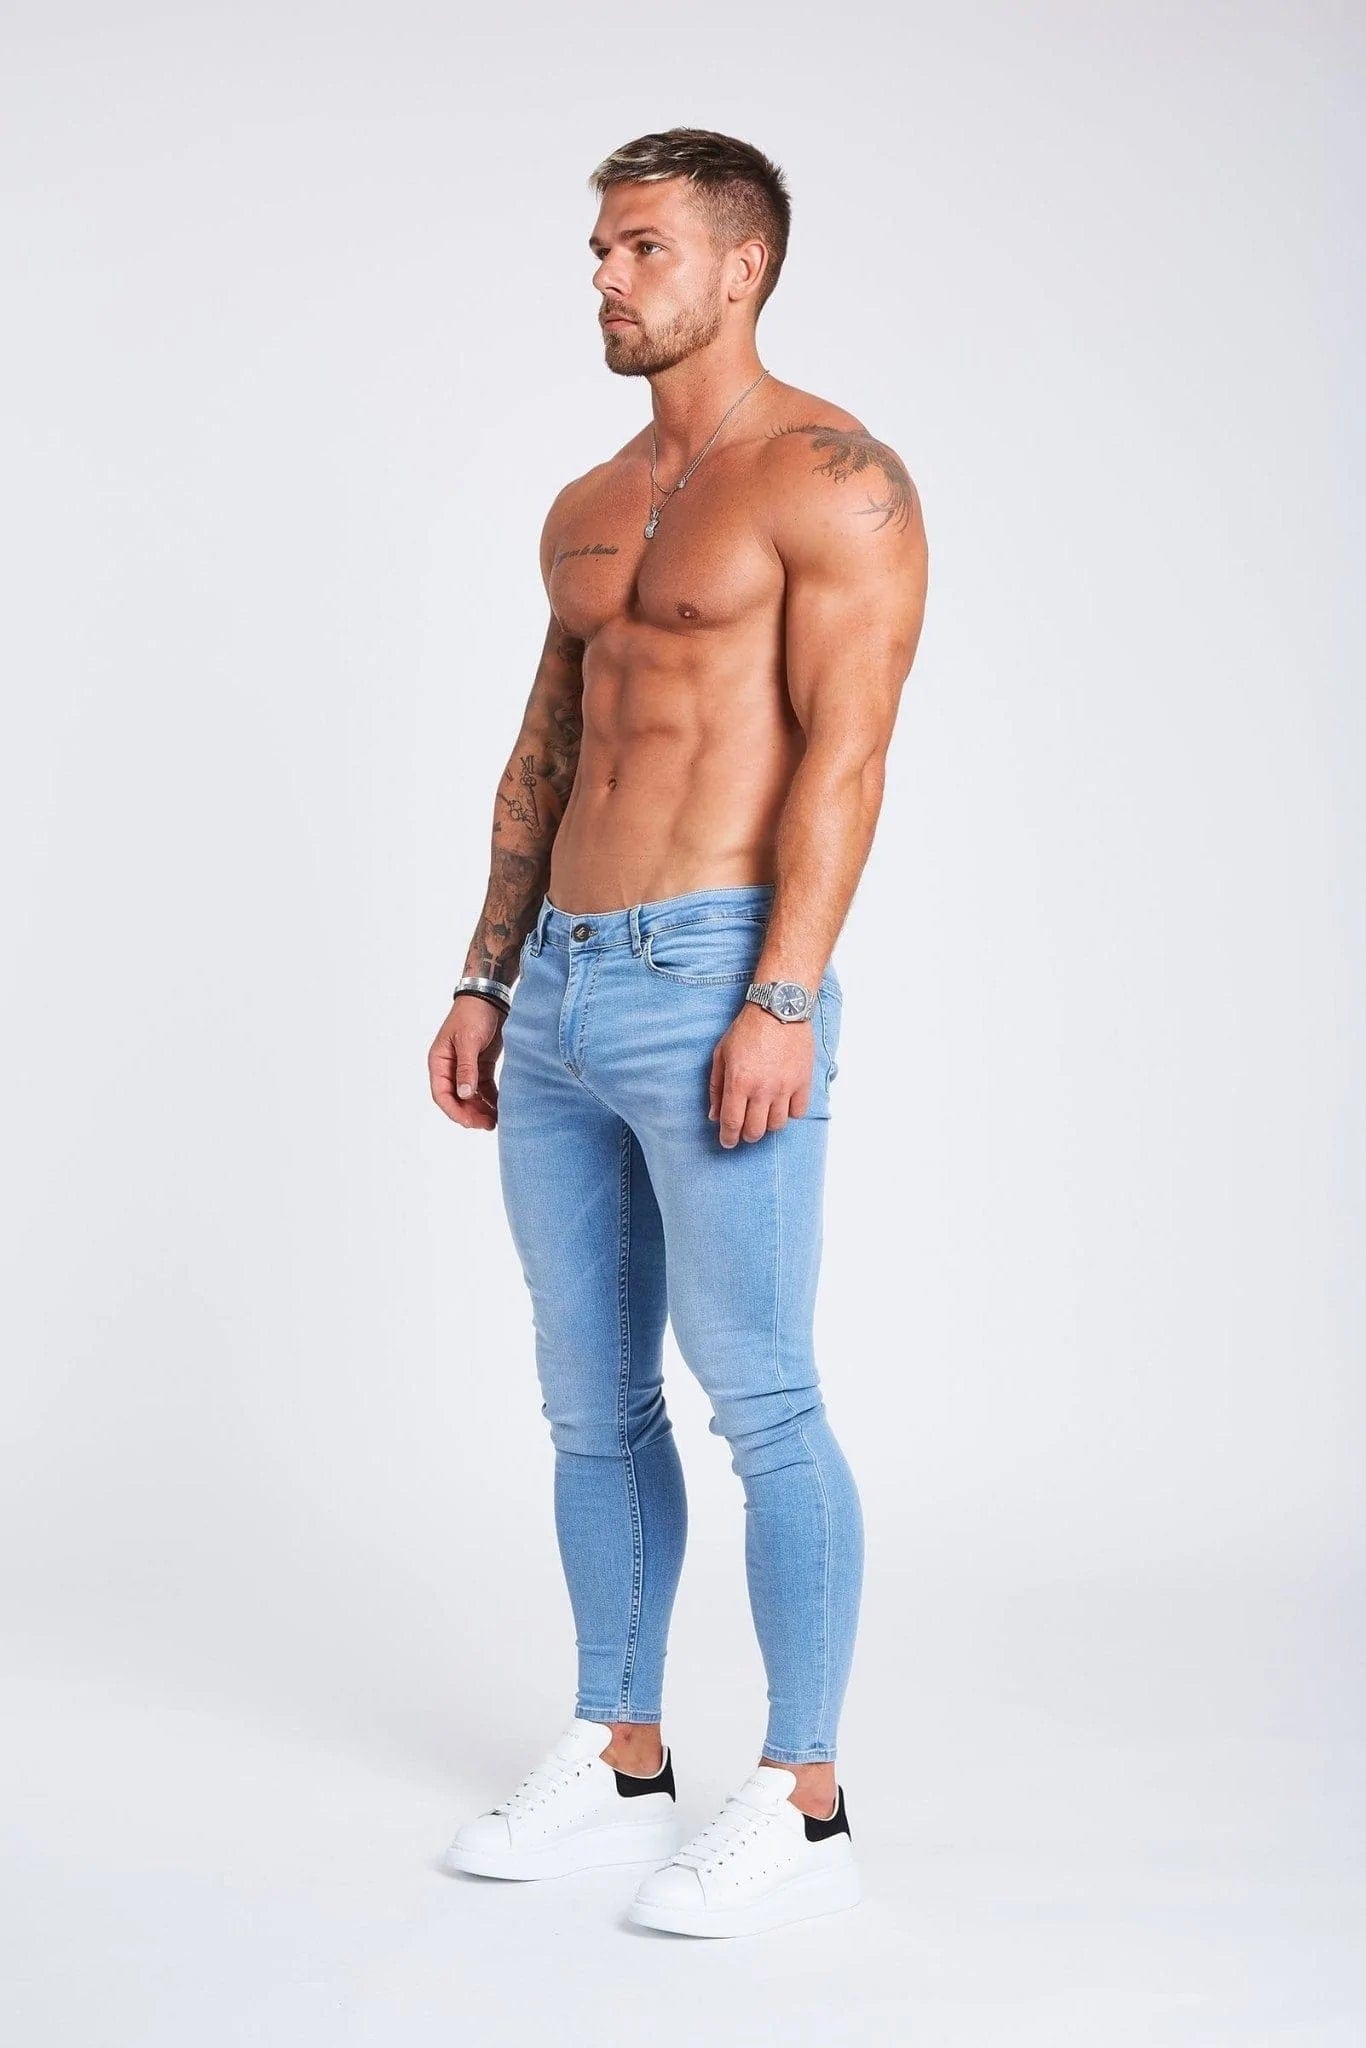 https://www.legendlondon.co/cdn/shop/products/legend-london-jeans-light-blue-jeans-non-ripped-32636336898245.webp?v=1695416845&width=1500